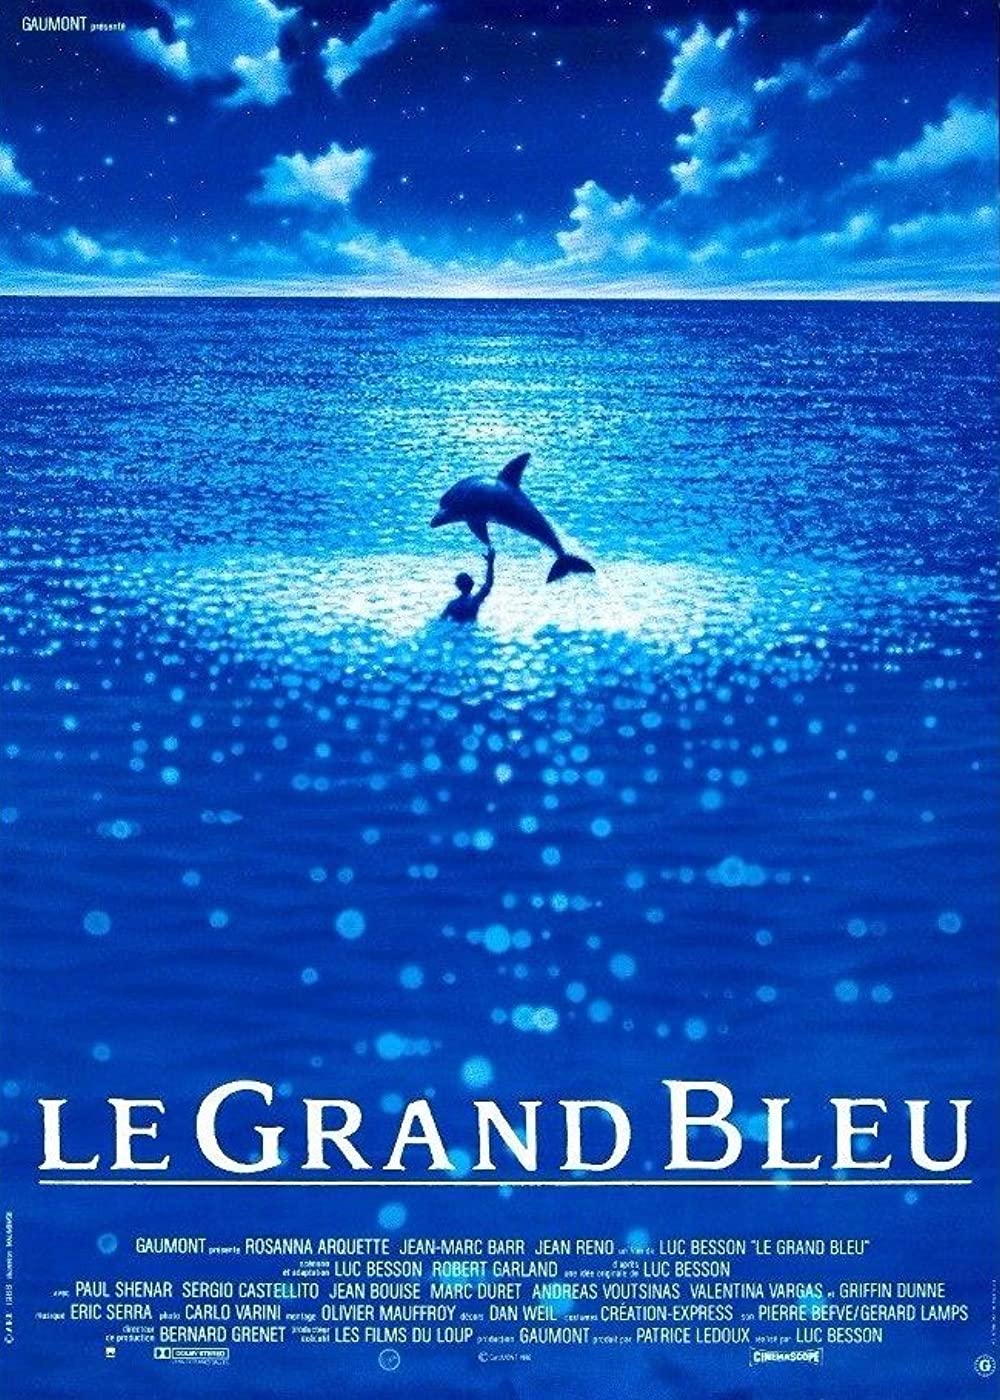 Filmbeschreibung zu Le grand bleu